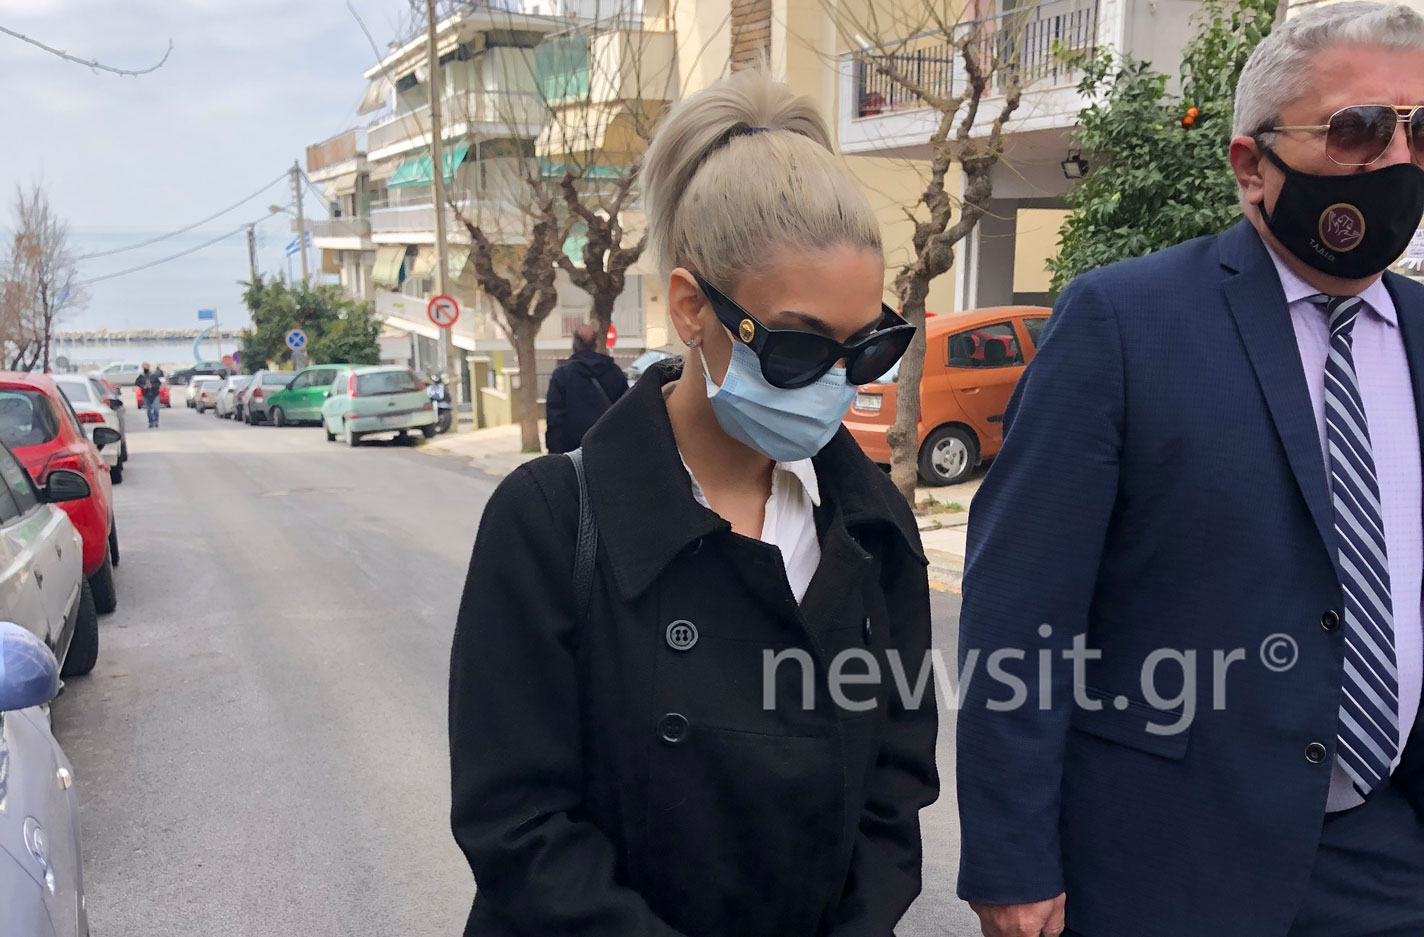 Θεσσαλονίκη: Εμφανίστηκε και πέρασε στην αντεπίθεση με μηνύσεις η 30χρονη που κατηγορεί ο ράπερ Lamanif (video)